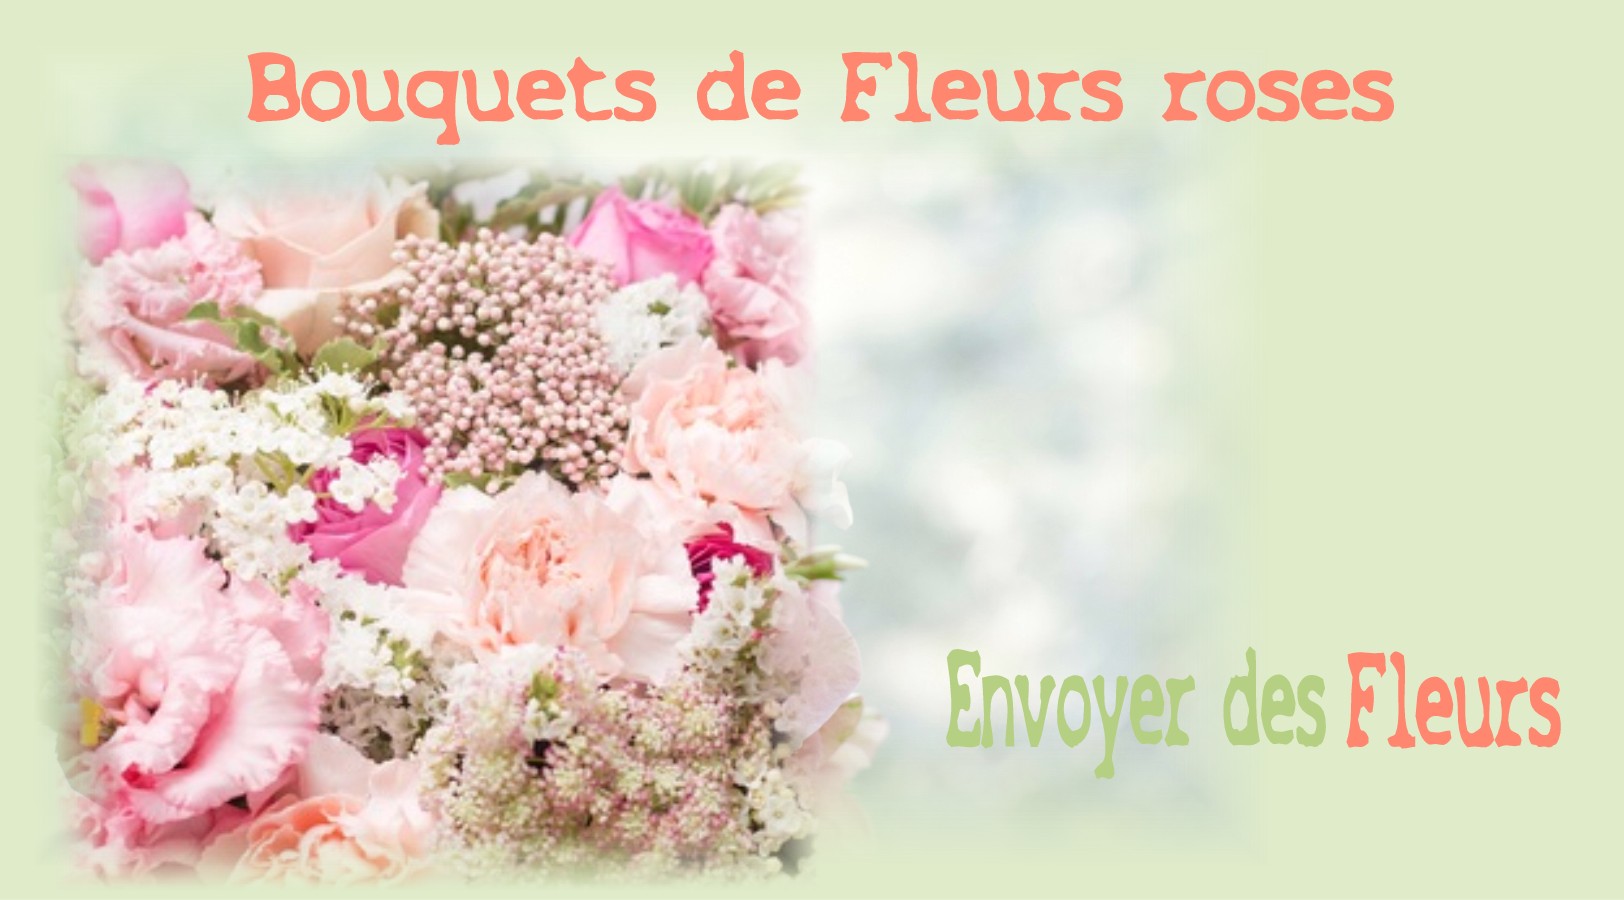 BOUQUETS DE FLEURS ROSES - FLEURISTE des ALPES DE HAUTE PROVENCE - ENVOYER DES FLEURS